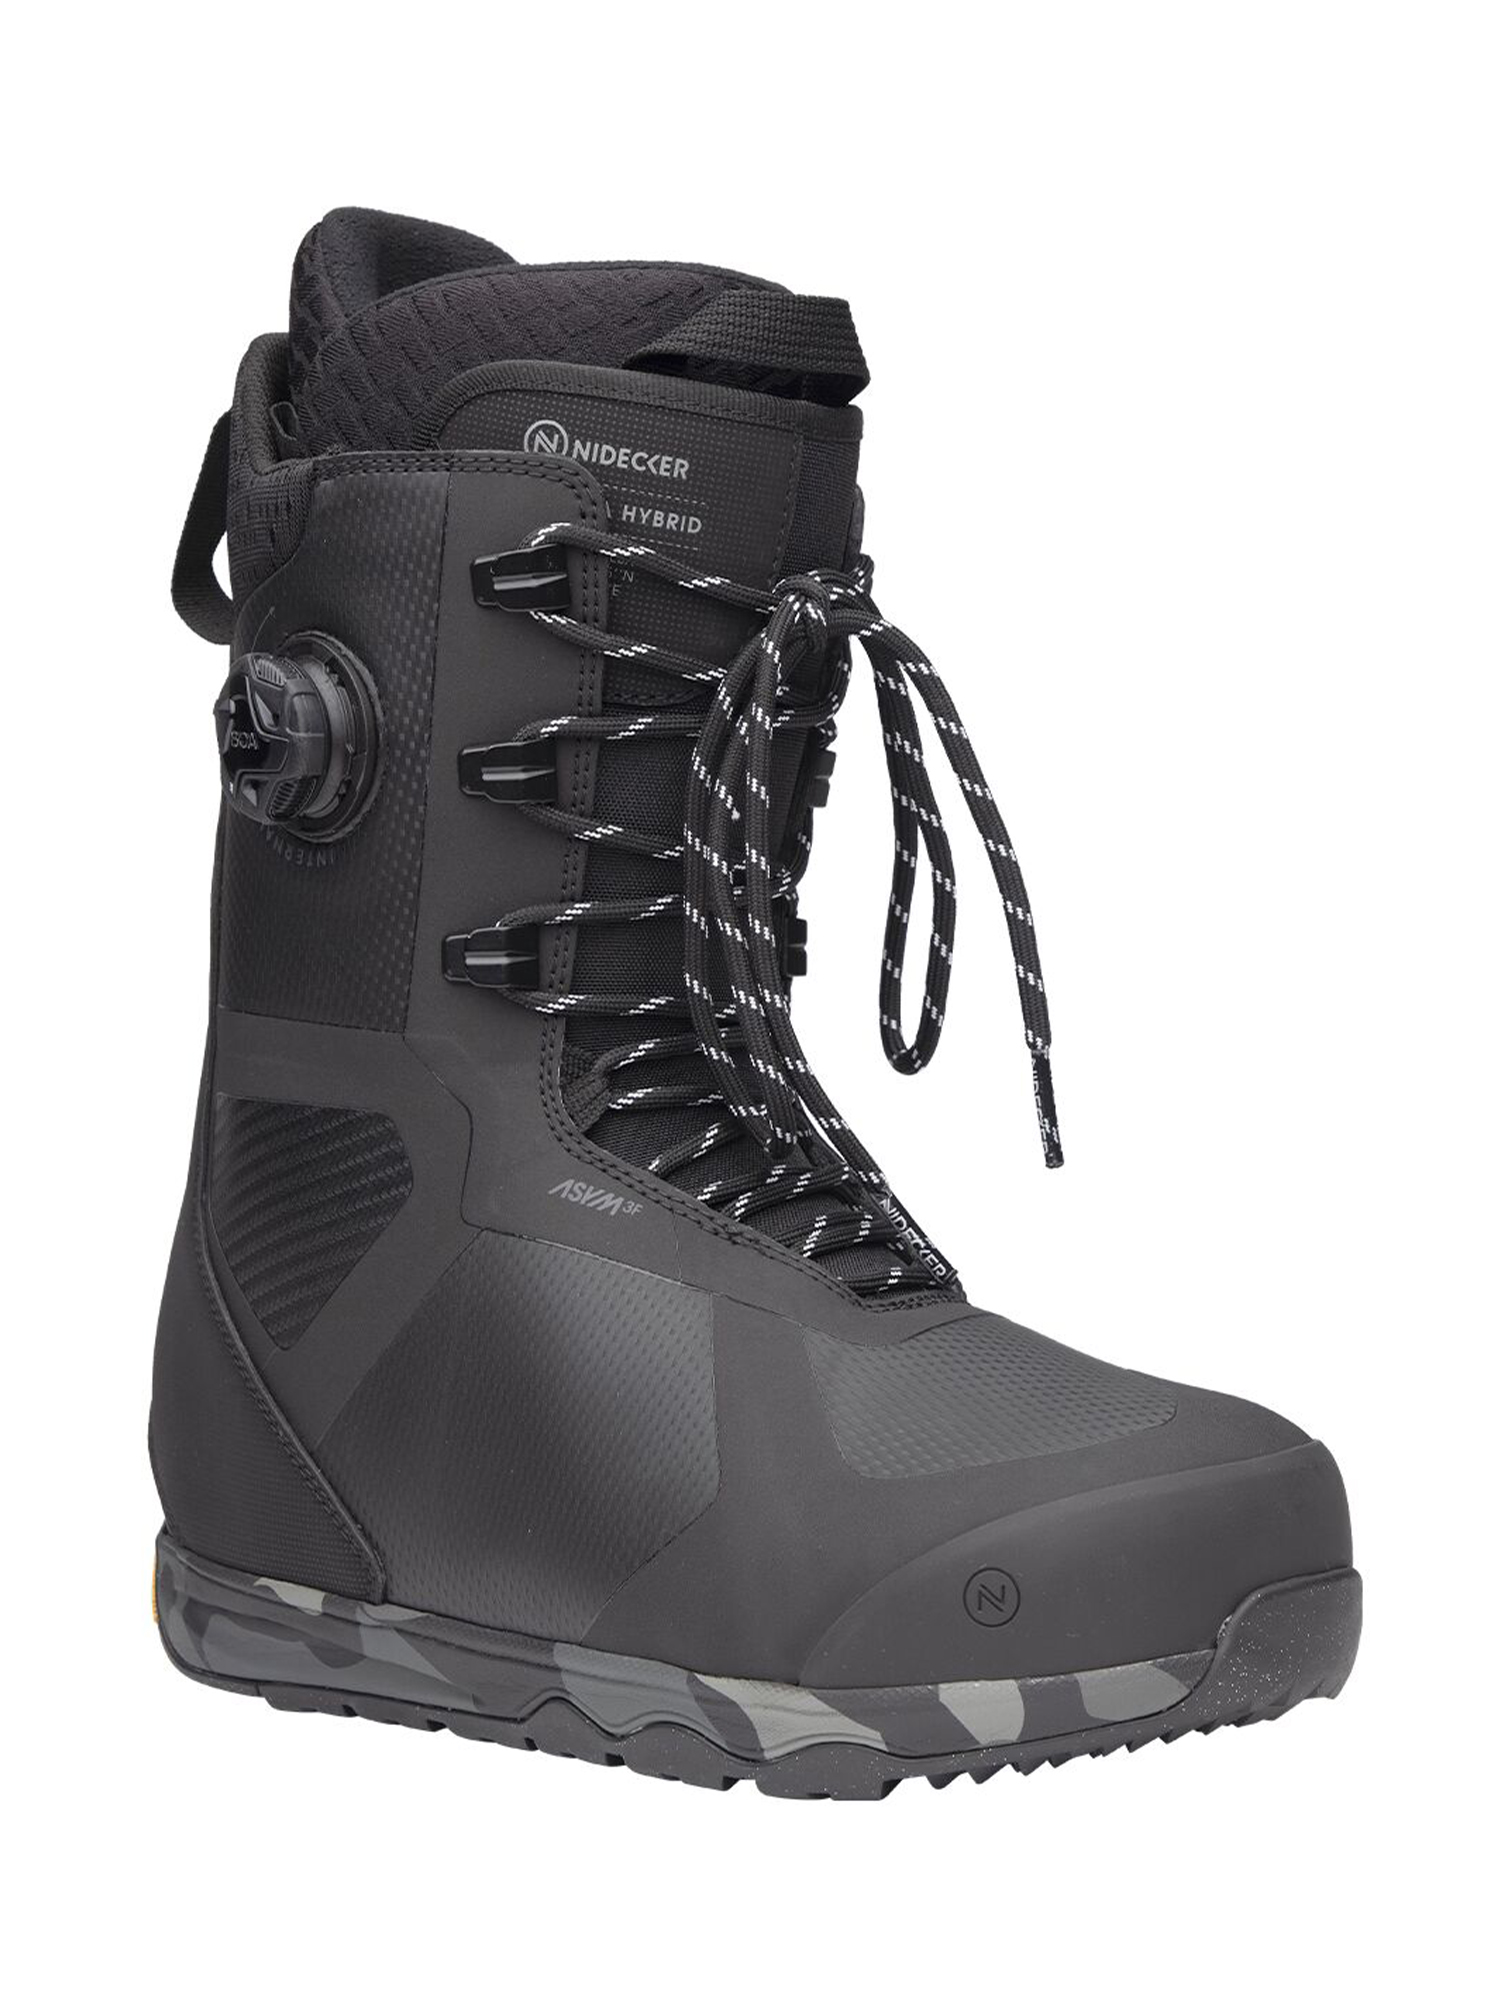 Ботинки для сноуборда Nidecker Kita Hybrid 2023-2024 black 26 см